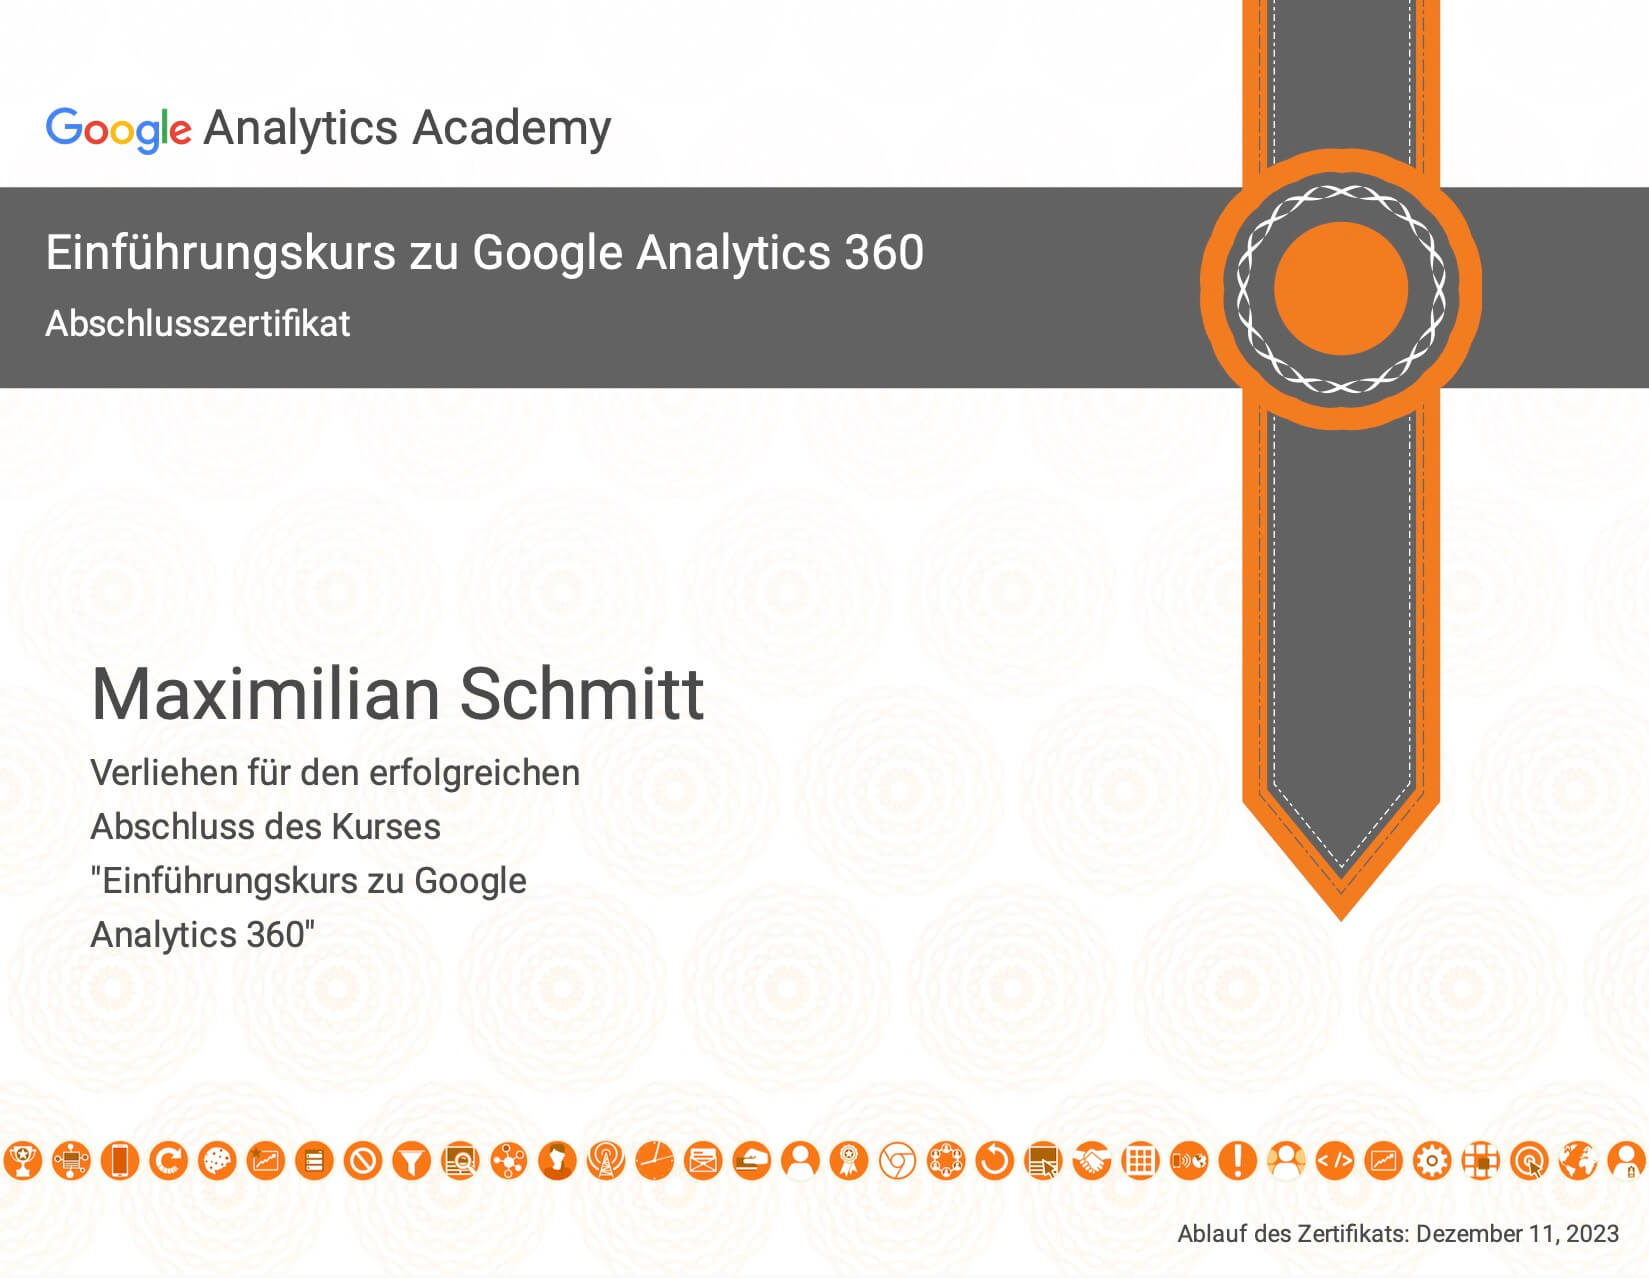 Einführung in Google Analytics 360